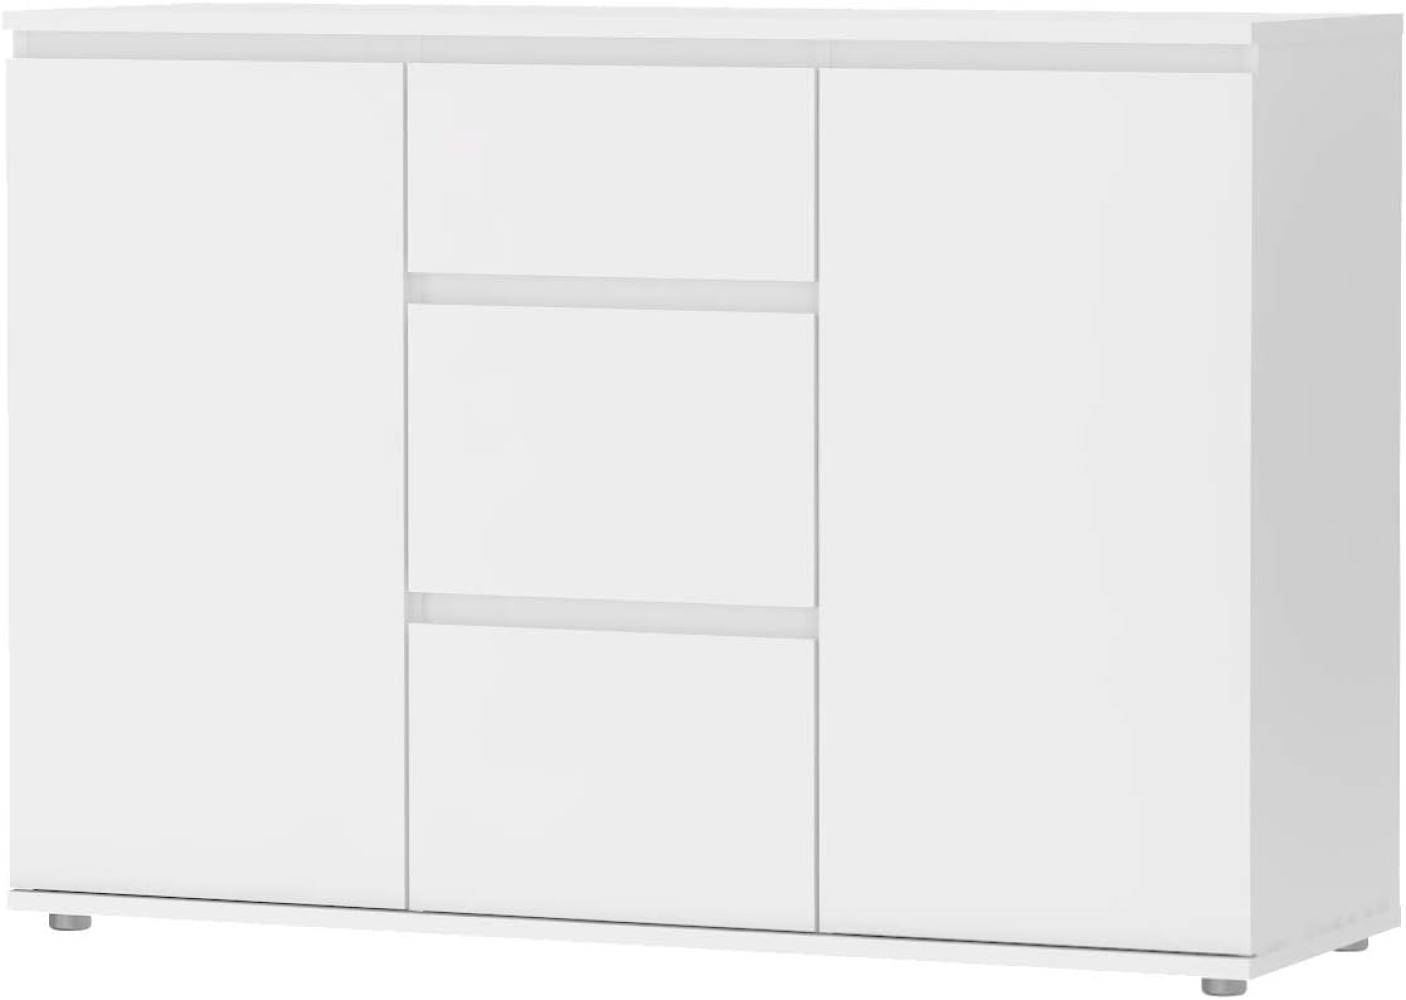 Sideboard mit Türen und Schubladen, weiße Farbe, 119,45 x 83,7 x 40 cm Bild 1